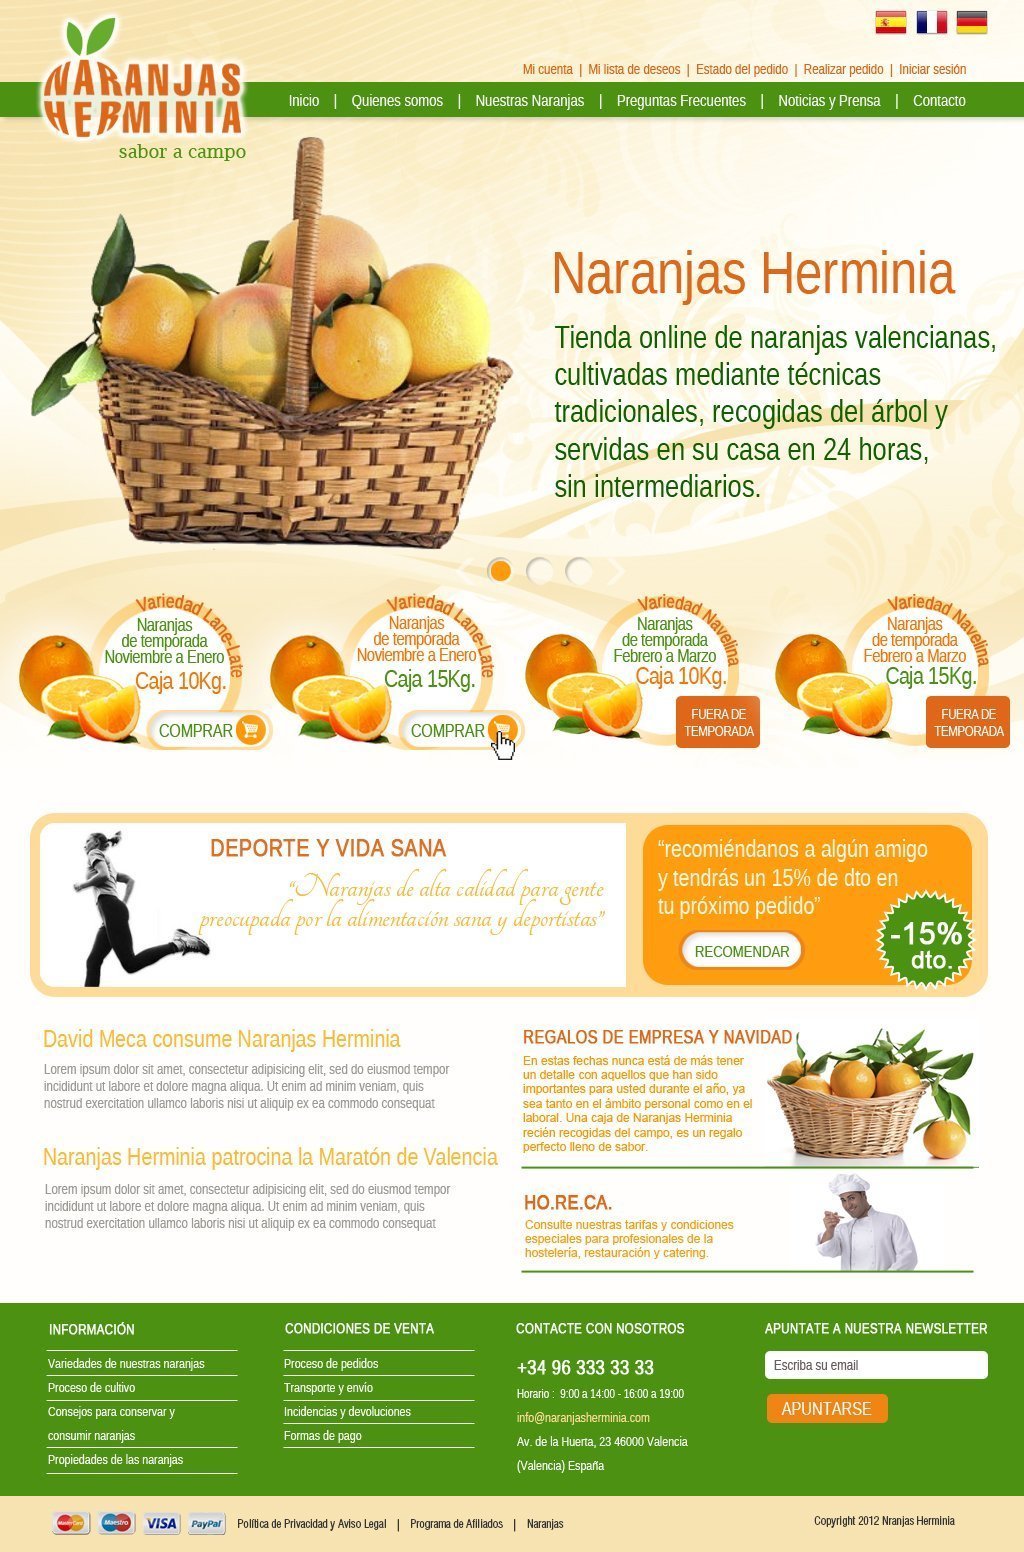 Naranjas Herminia